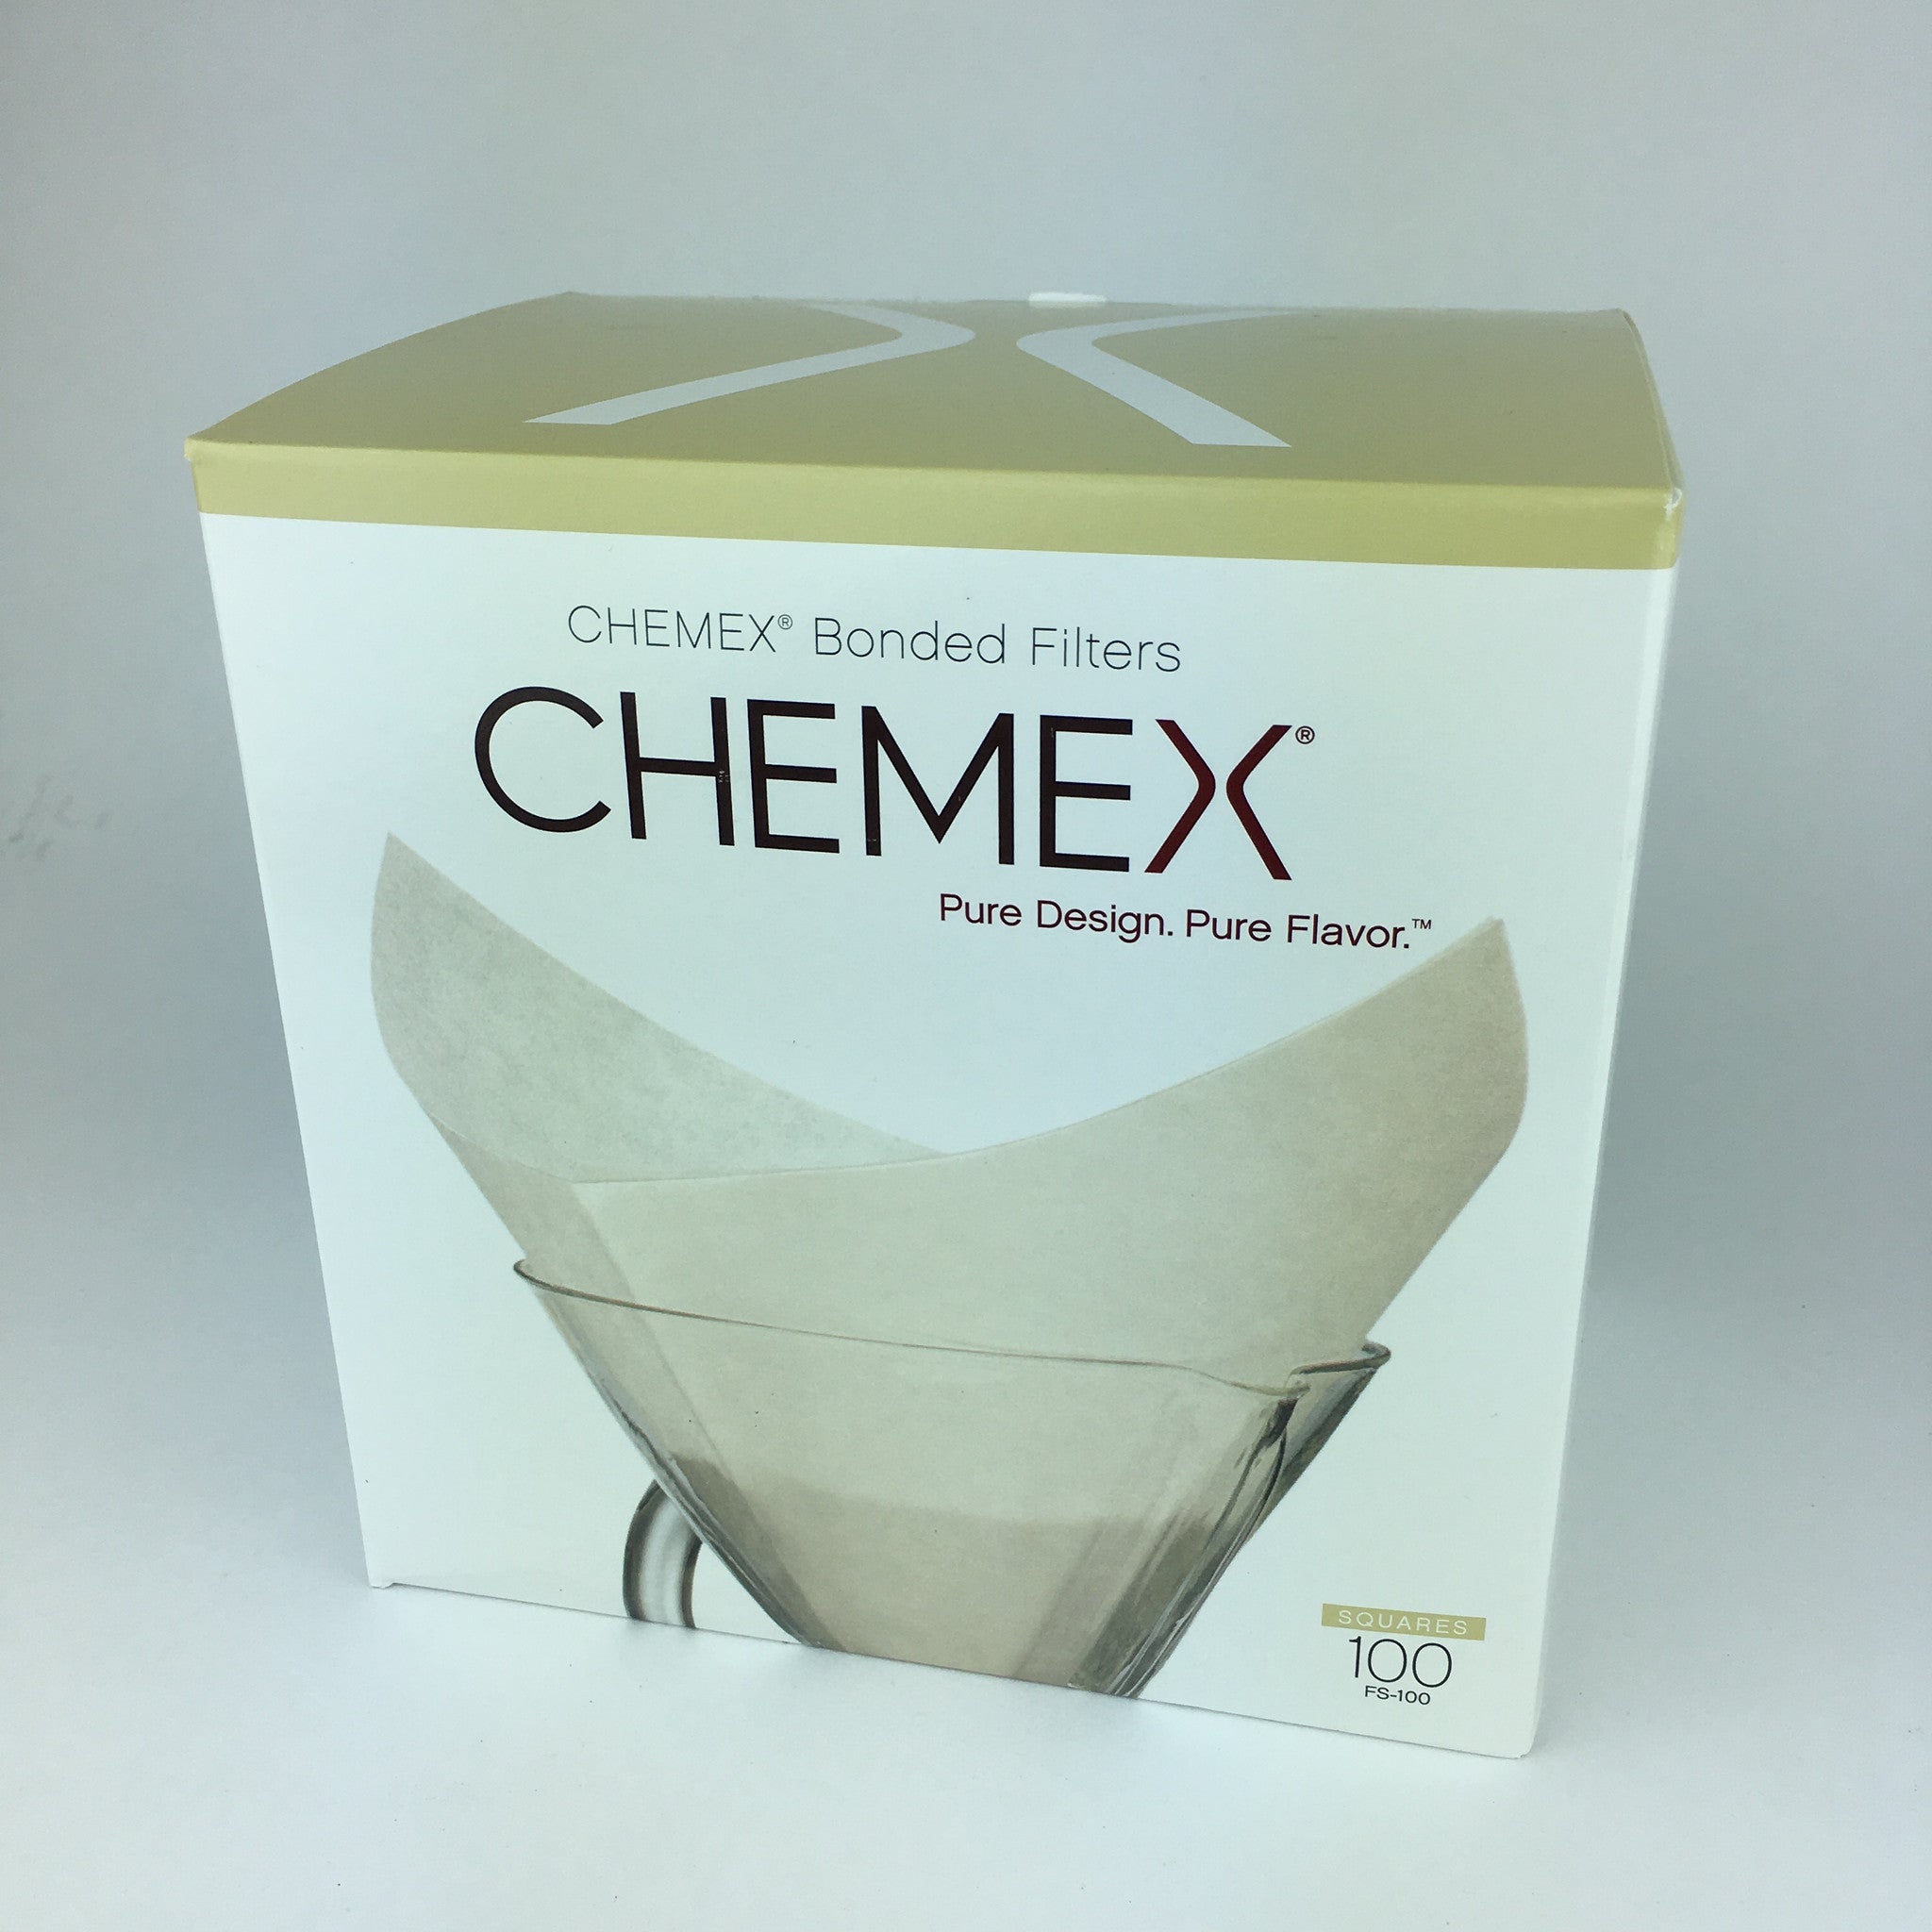 Chemex - Bivouac café biologique